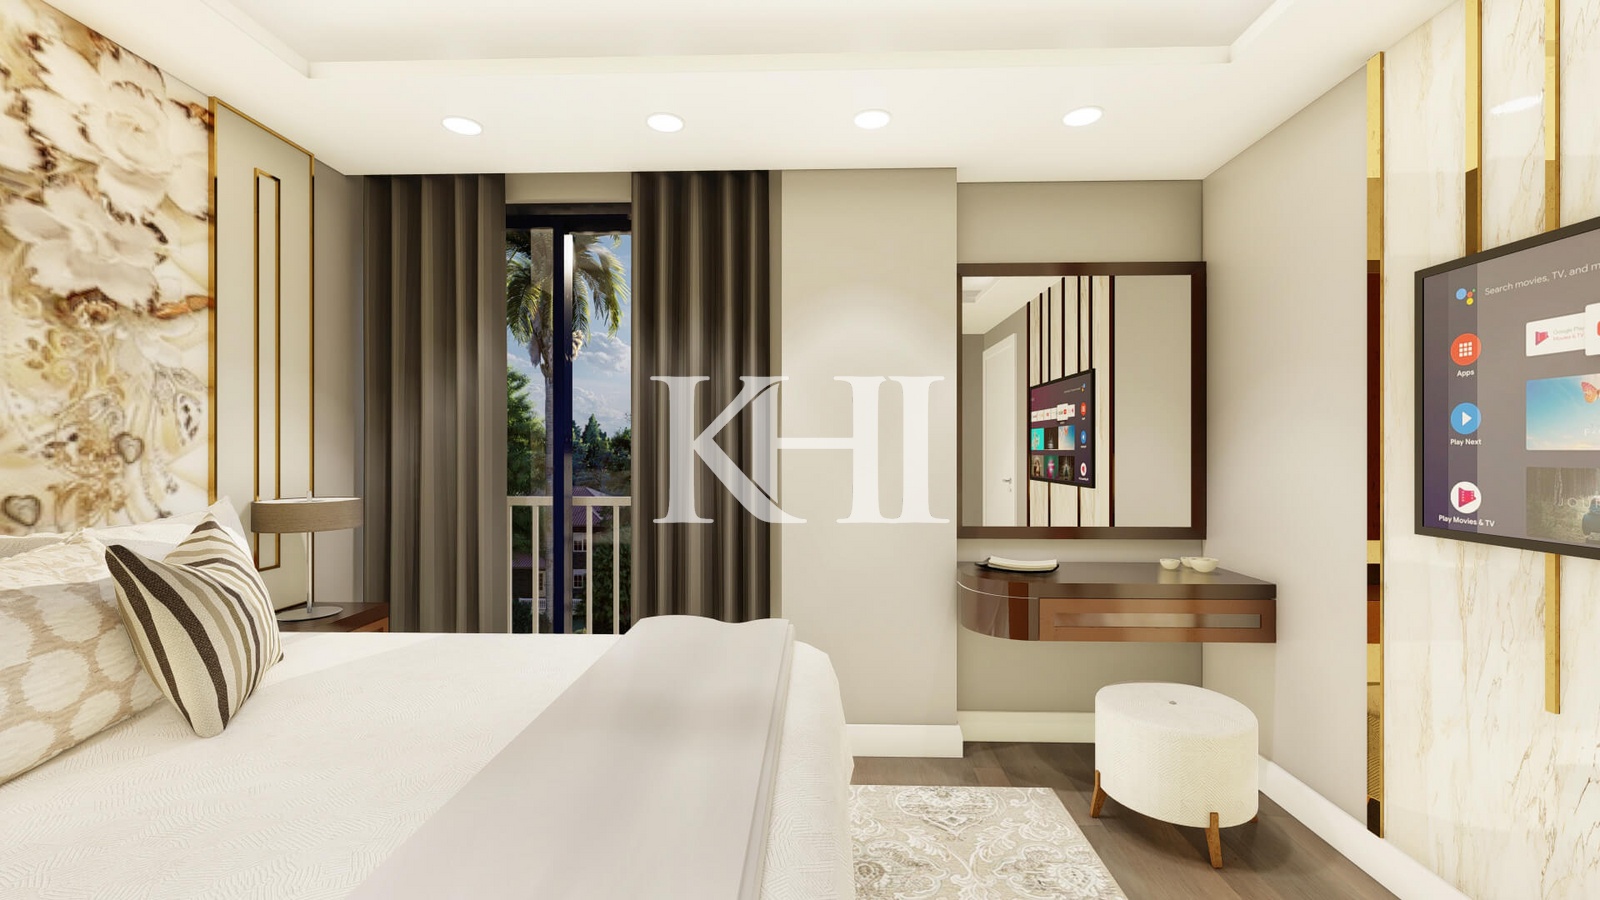 Premium Hotel Concept Apartments Slide Image 26